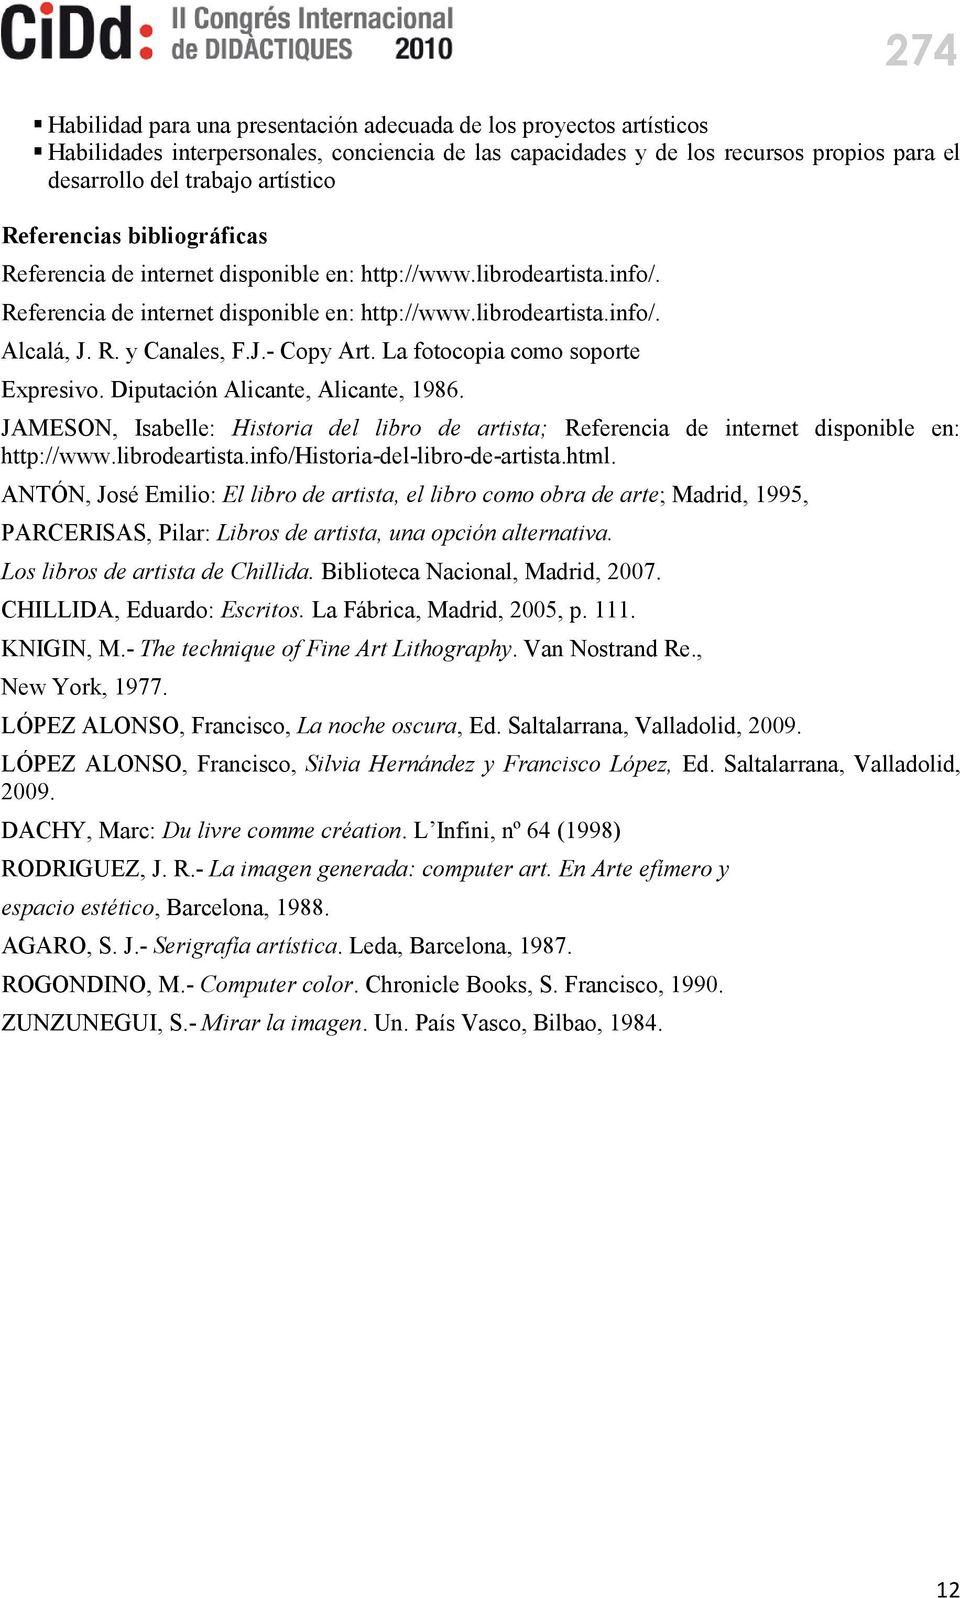 La fotocopia como soporte Expresivo. Diputación Alicante, Alicante, 1986. JAMESON, Isabelle: Historia del libro de artista; Referencia de internet disponible en: http://www.librodeartista.